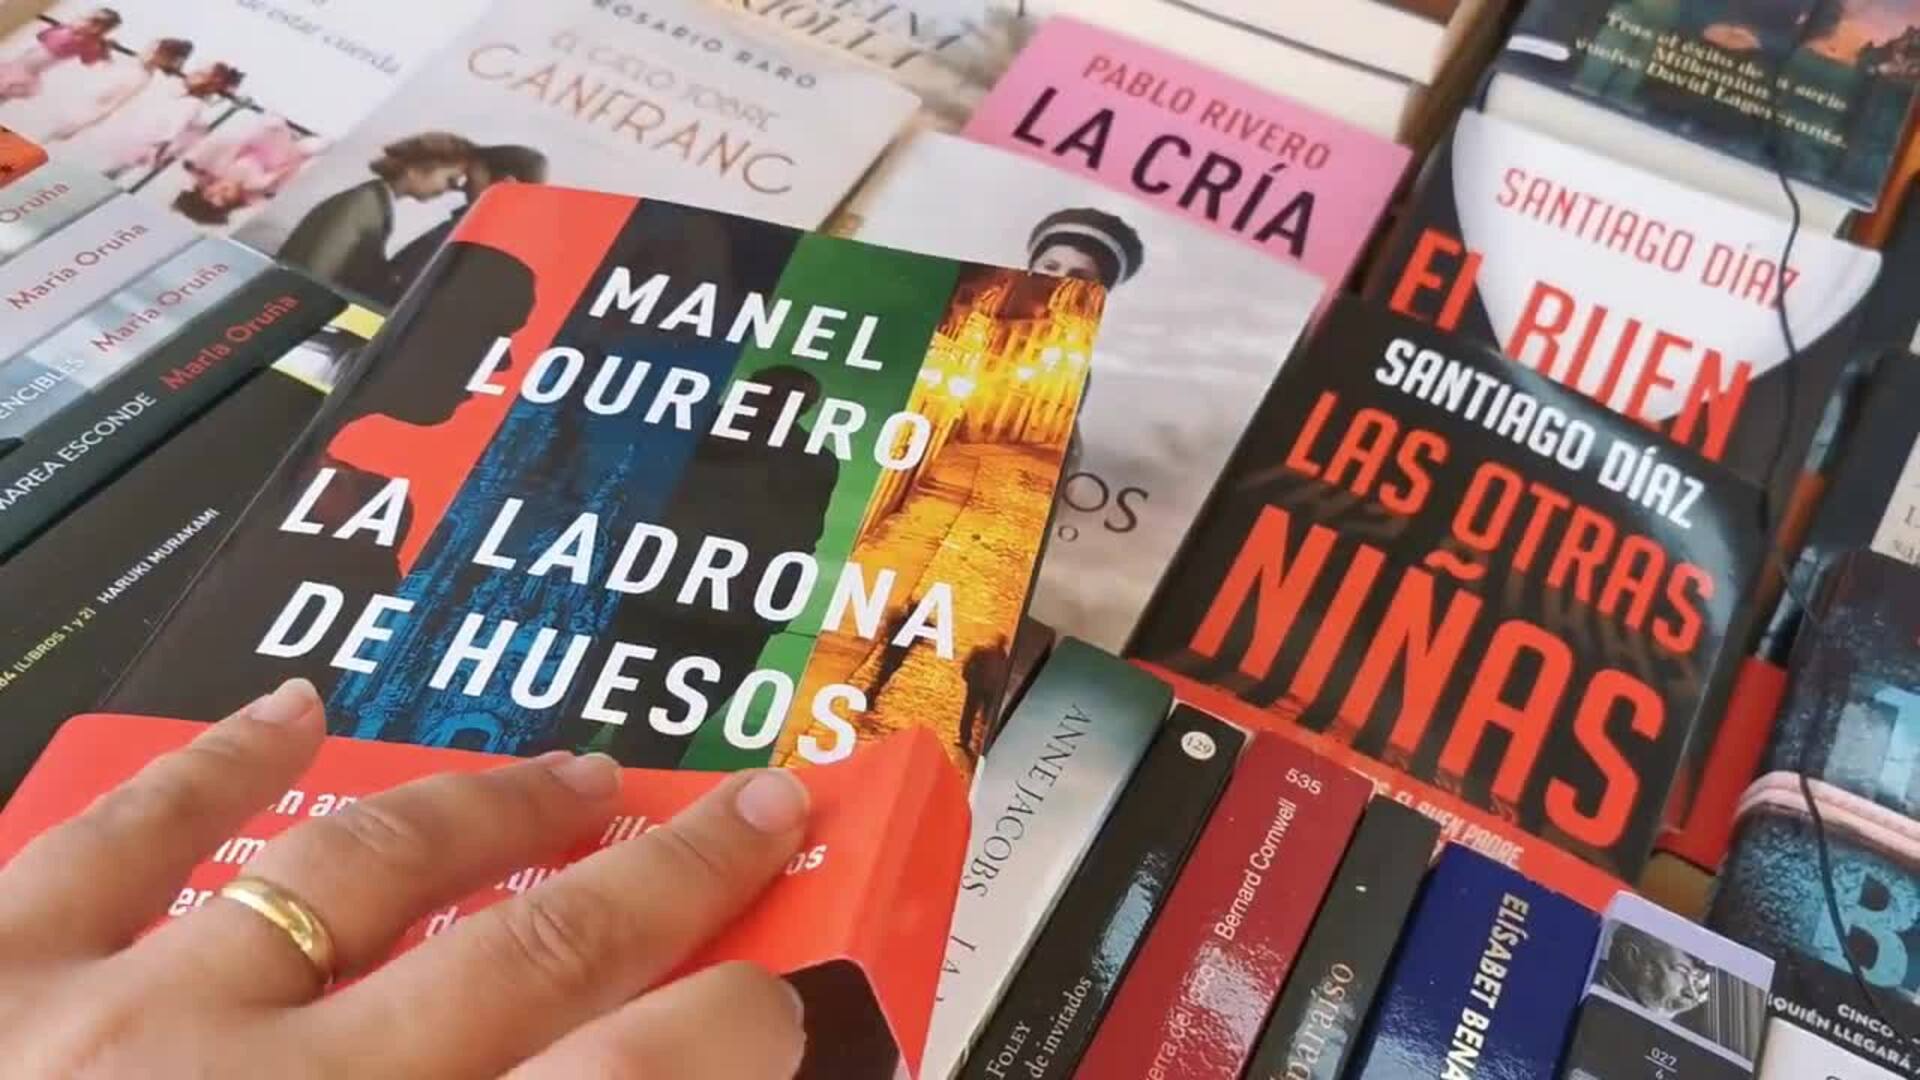 Estas son las sugerencias lectoras de Sandoval, Don Quijote Digital y Los Arcos para la Feria del Libro de Valladolid